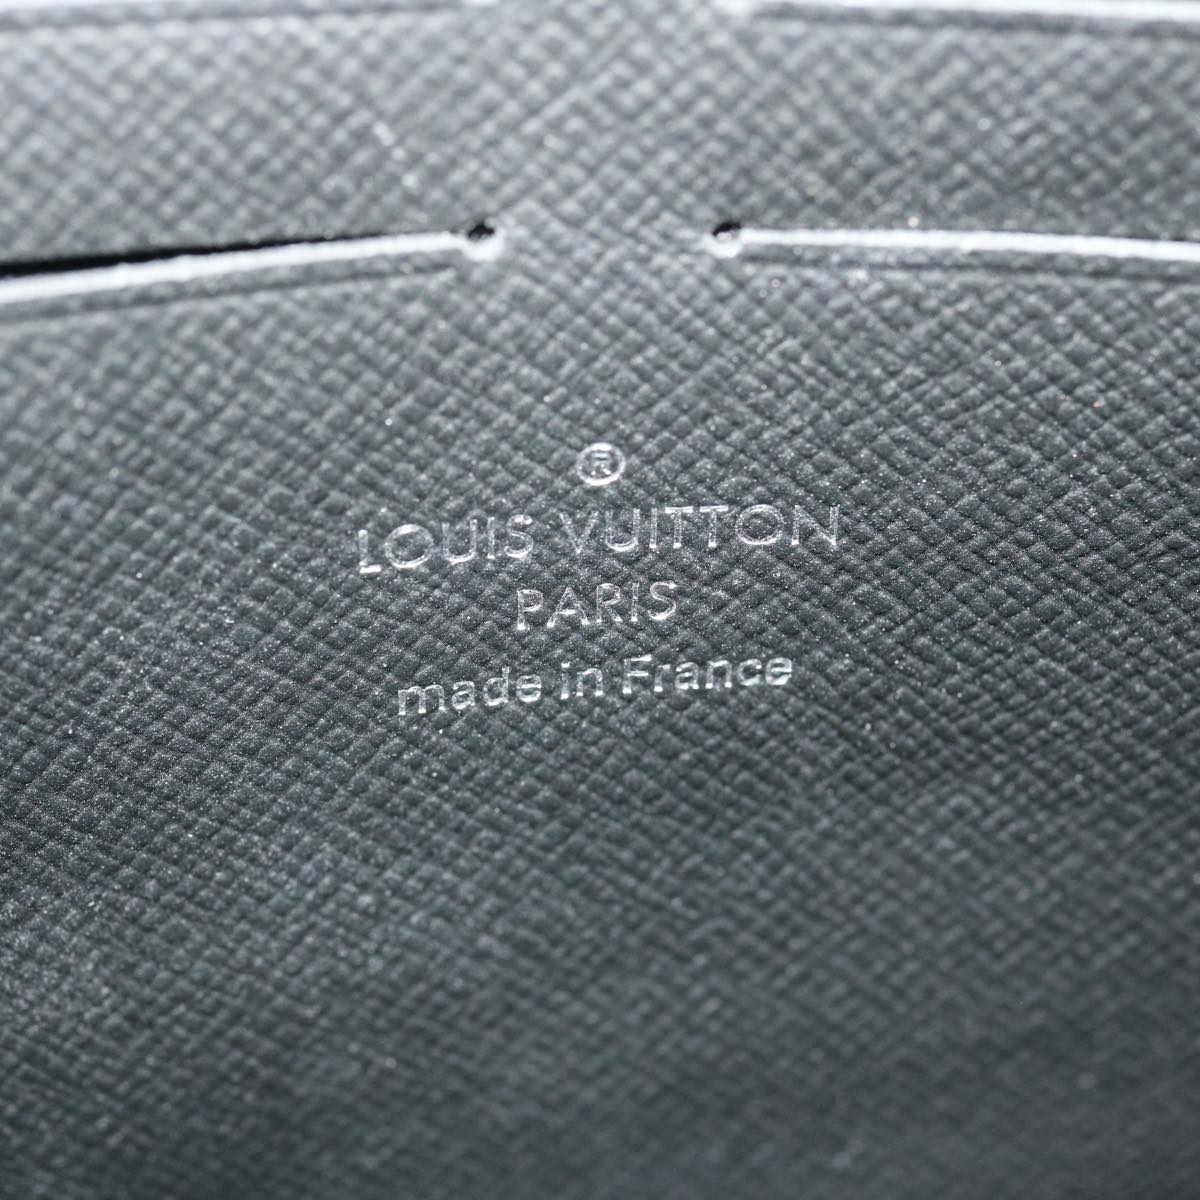 Louis Vuitton Pochette Voyage Mm Monogram Galaxy M44448